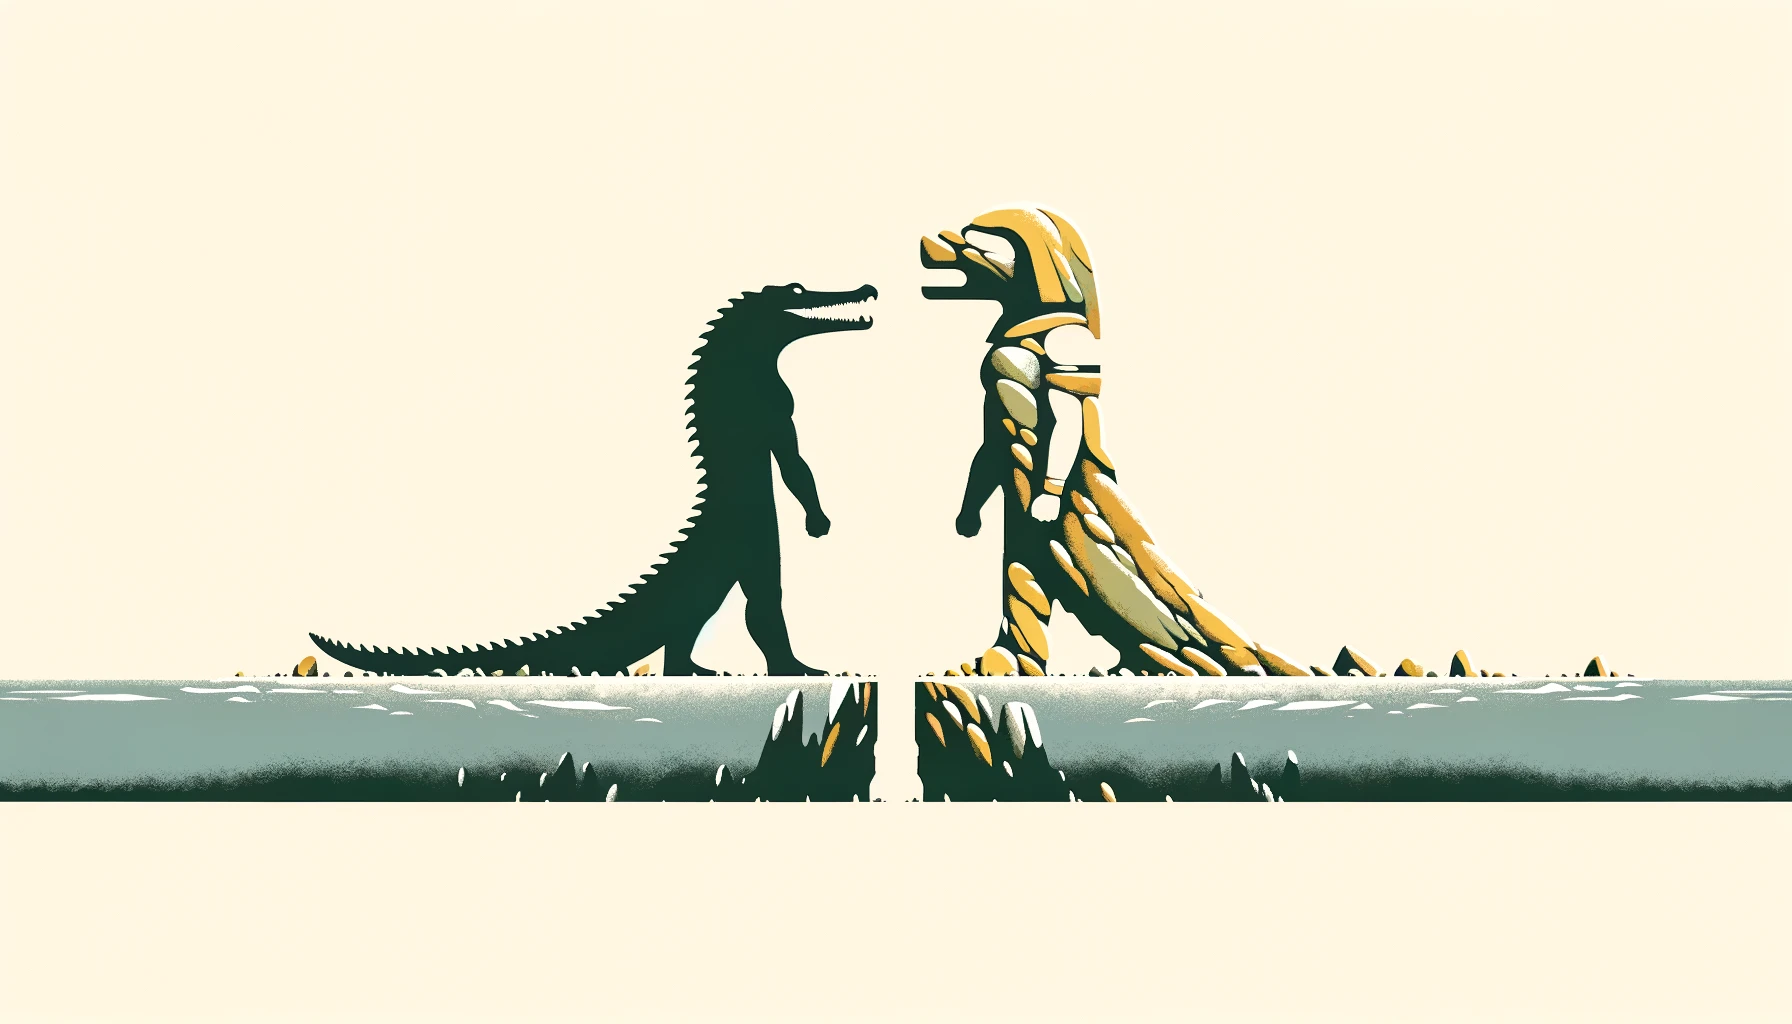 Sobek vs Geb: The Crocodile God vs the Earth God